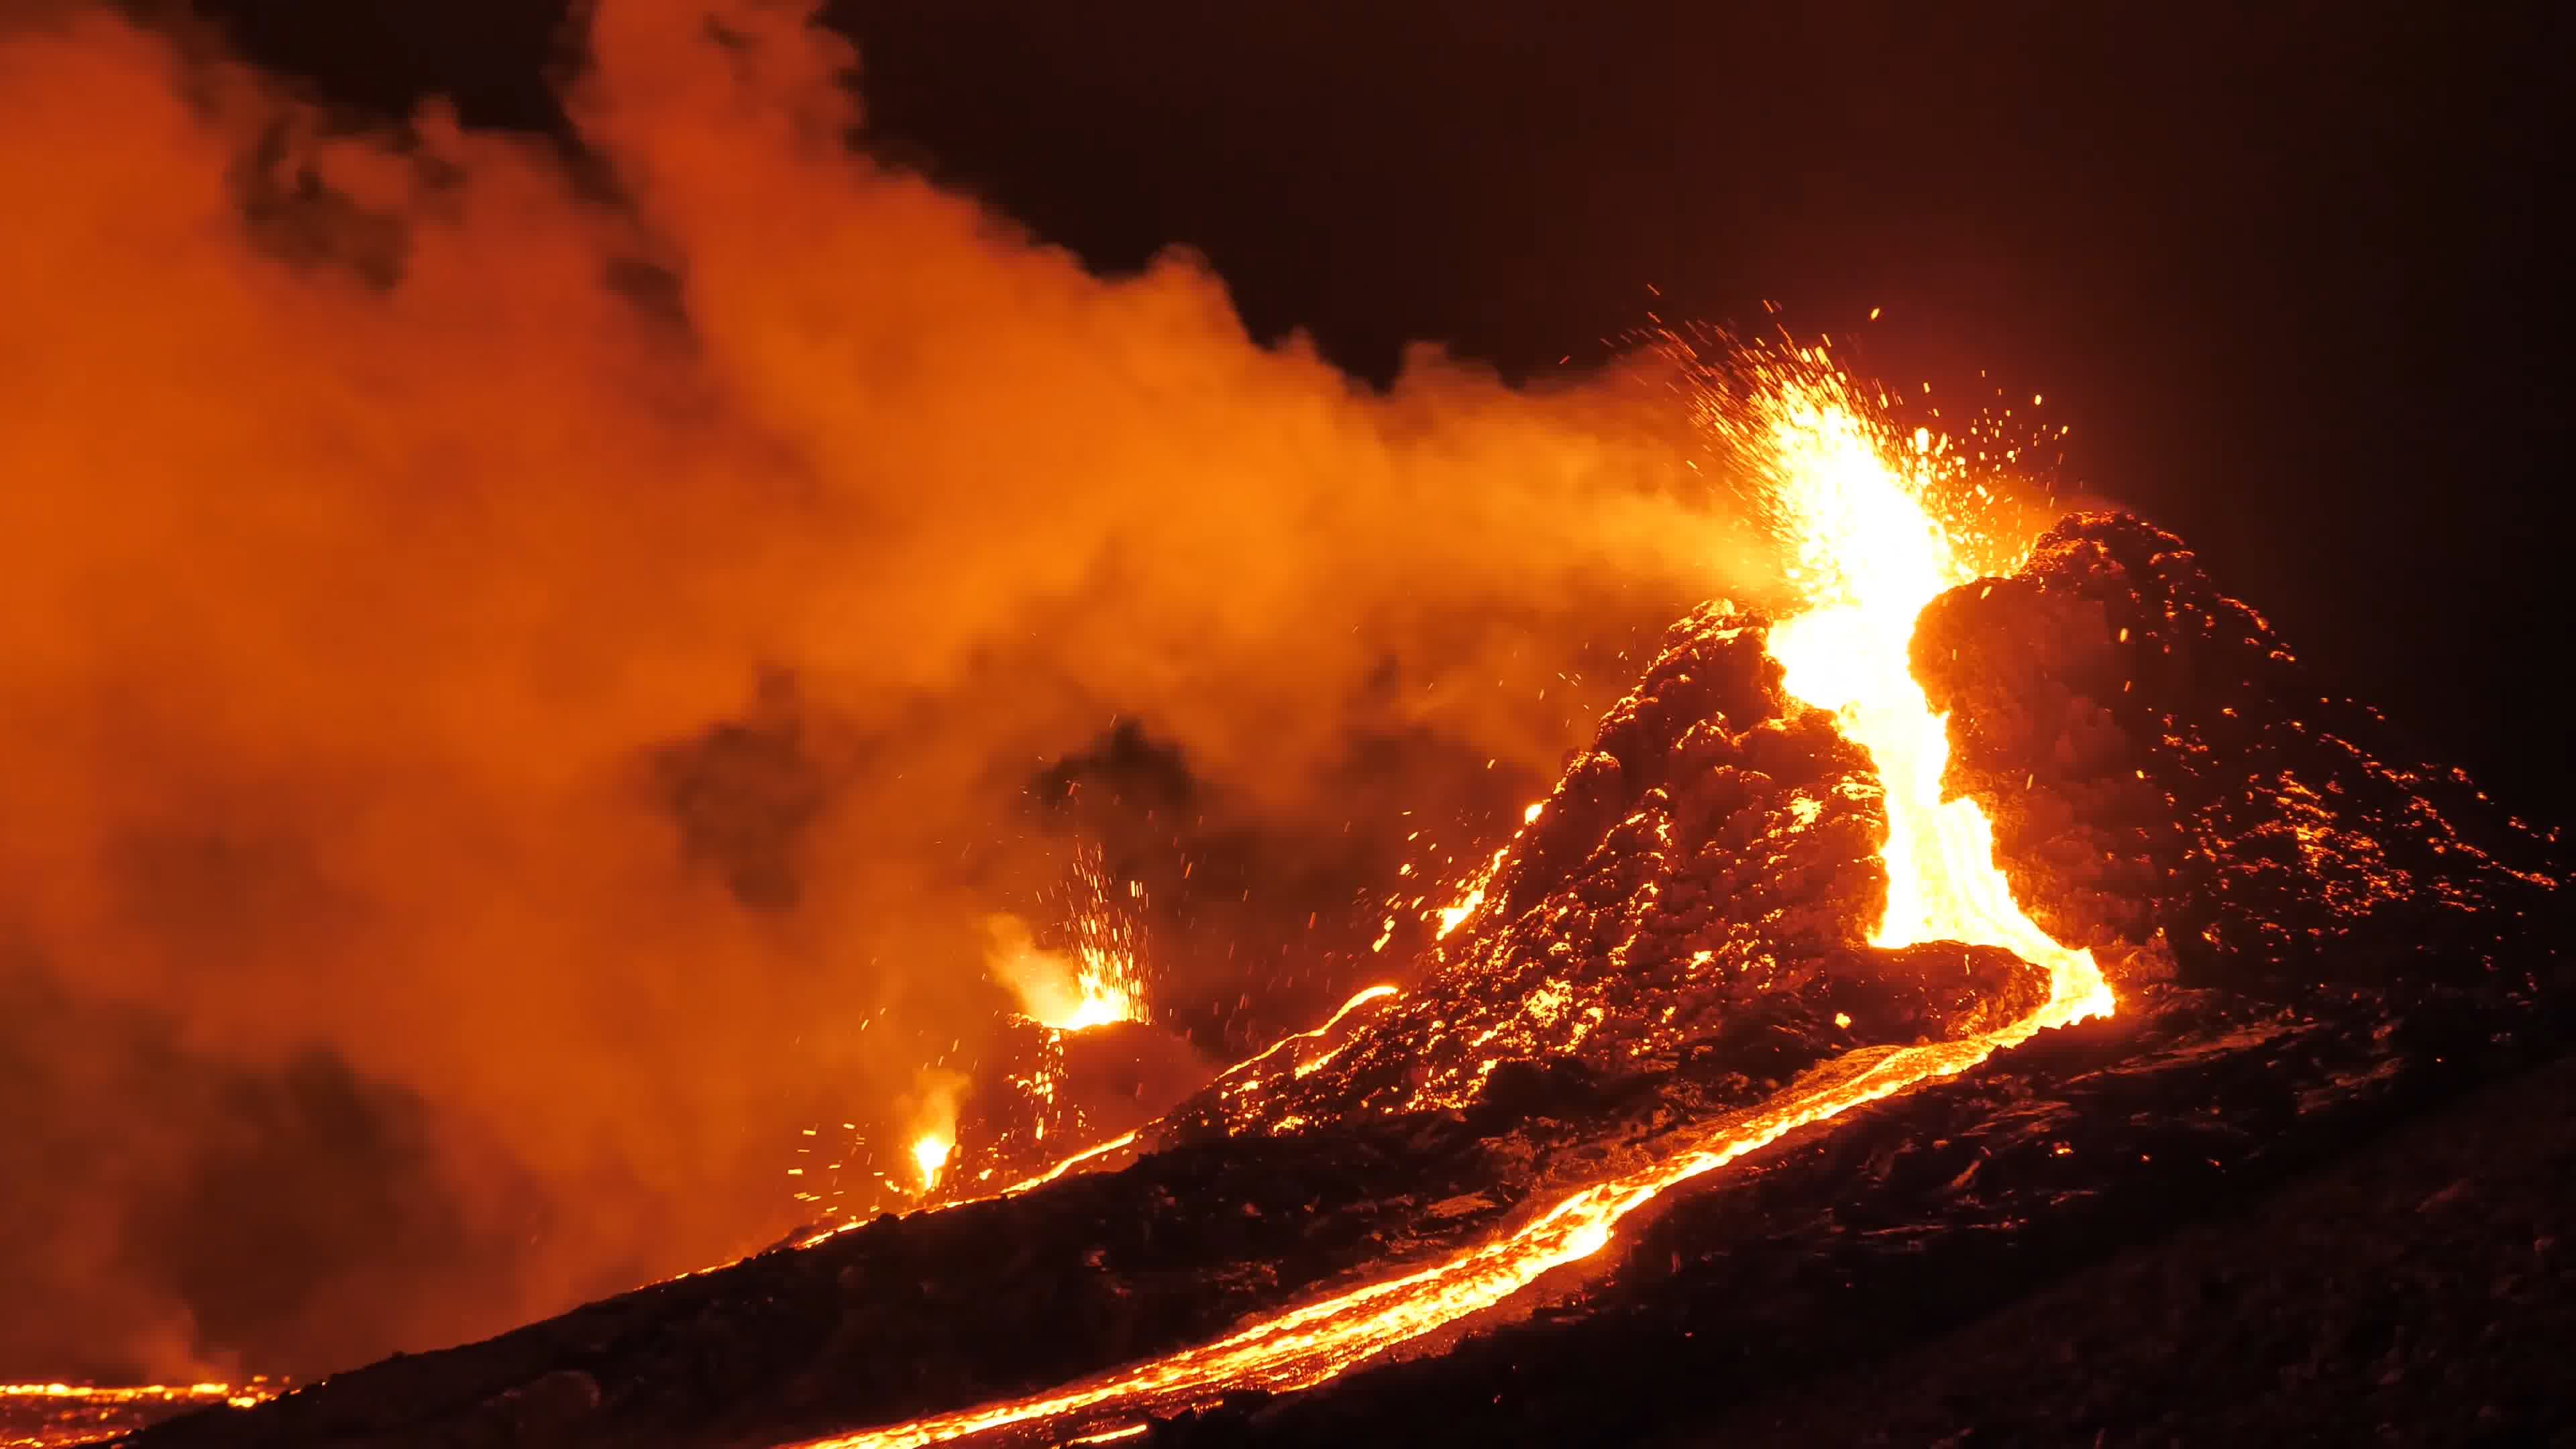 大自然壮丽风景之唯美好看的火山爆发图片壁纸【10】 - 摄影 - 亿图全景图库